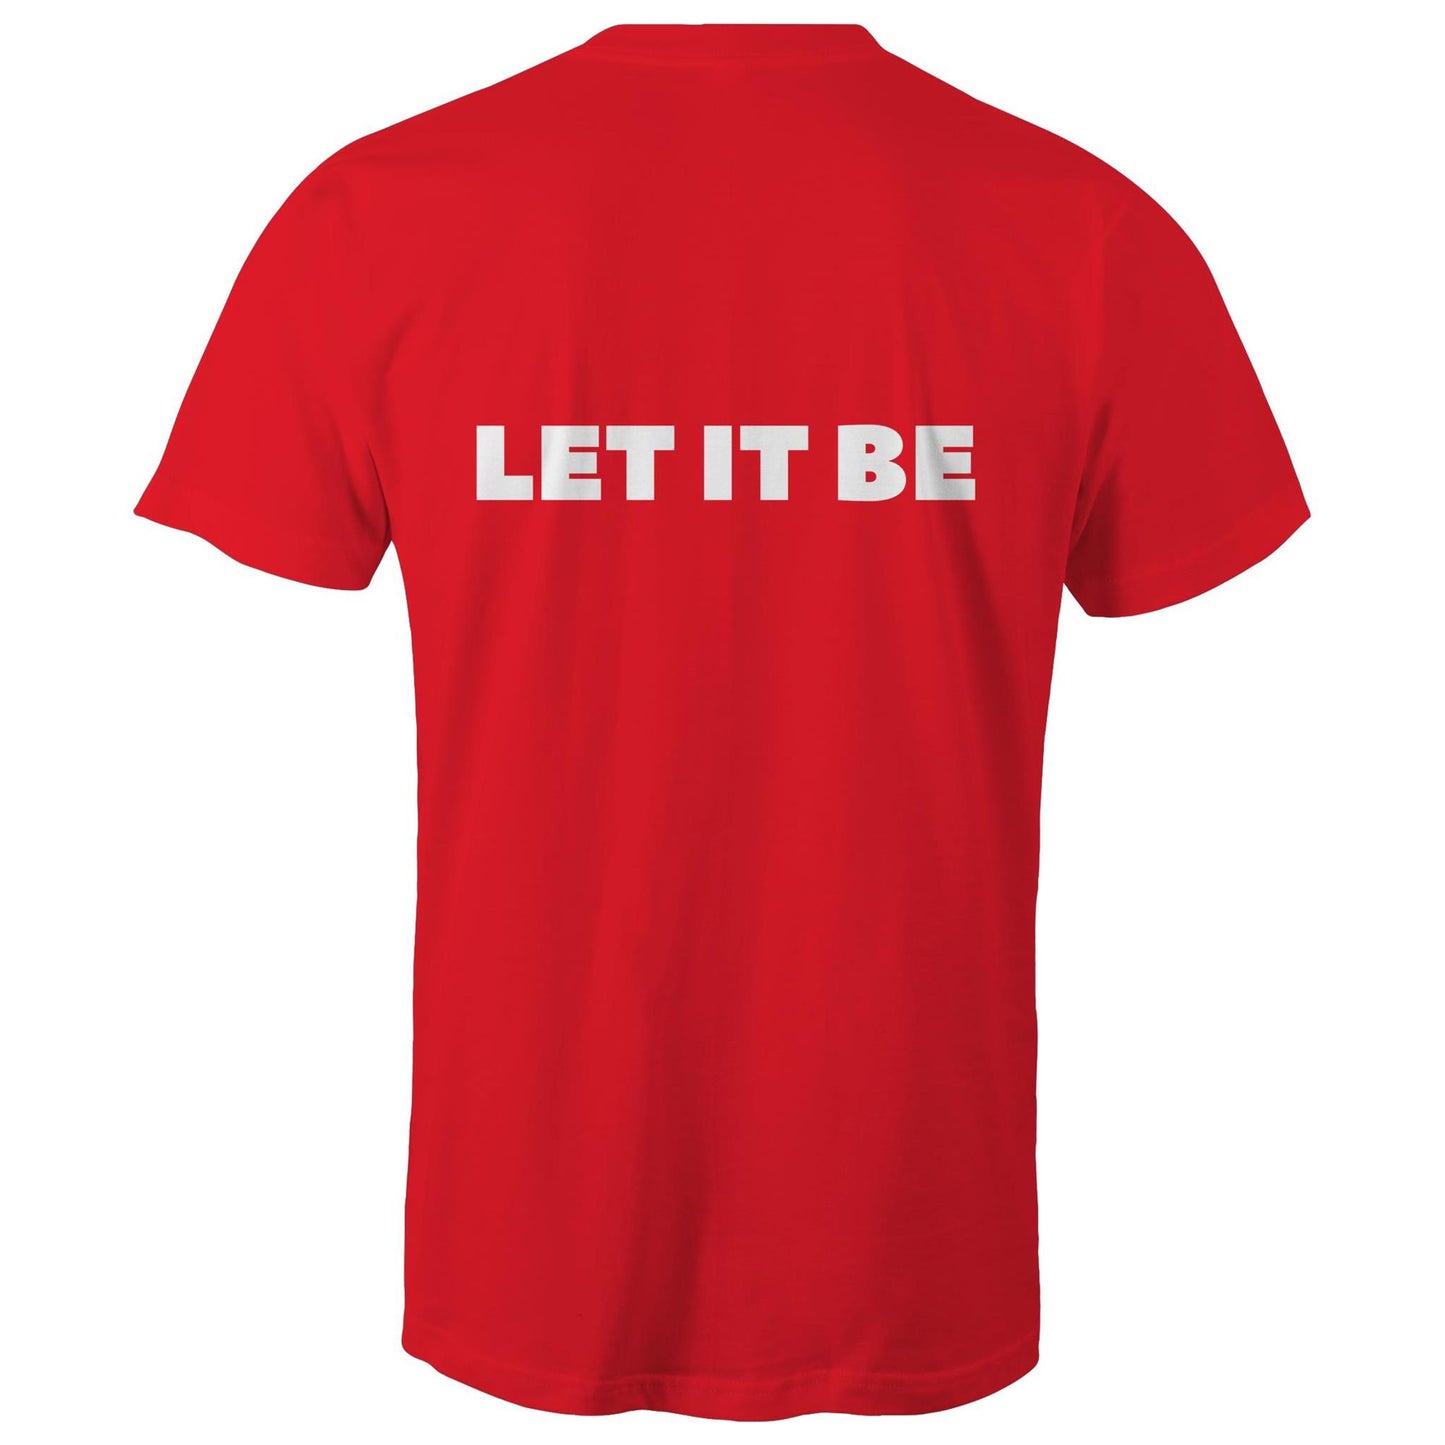 LET IT BE - Unisex T-Shirt